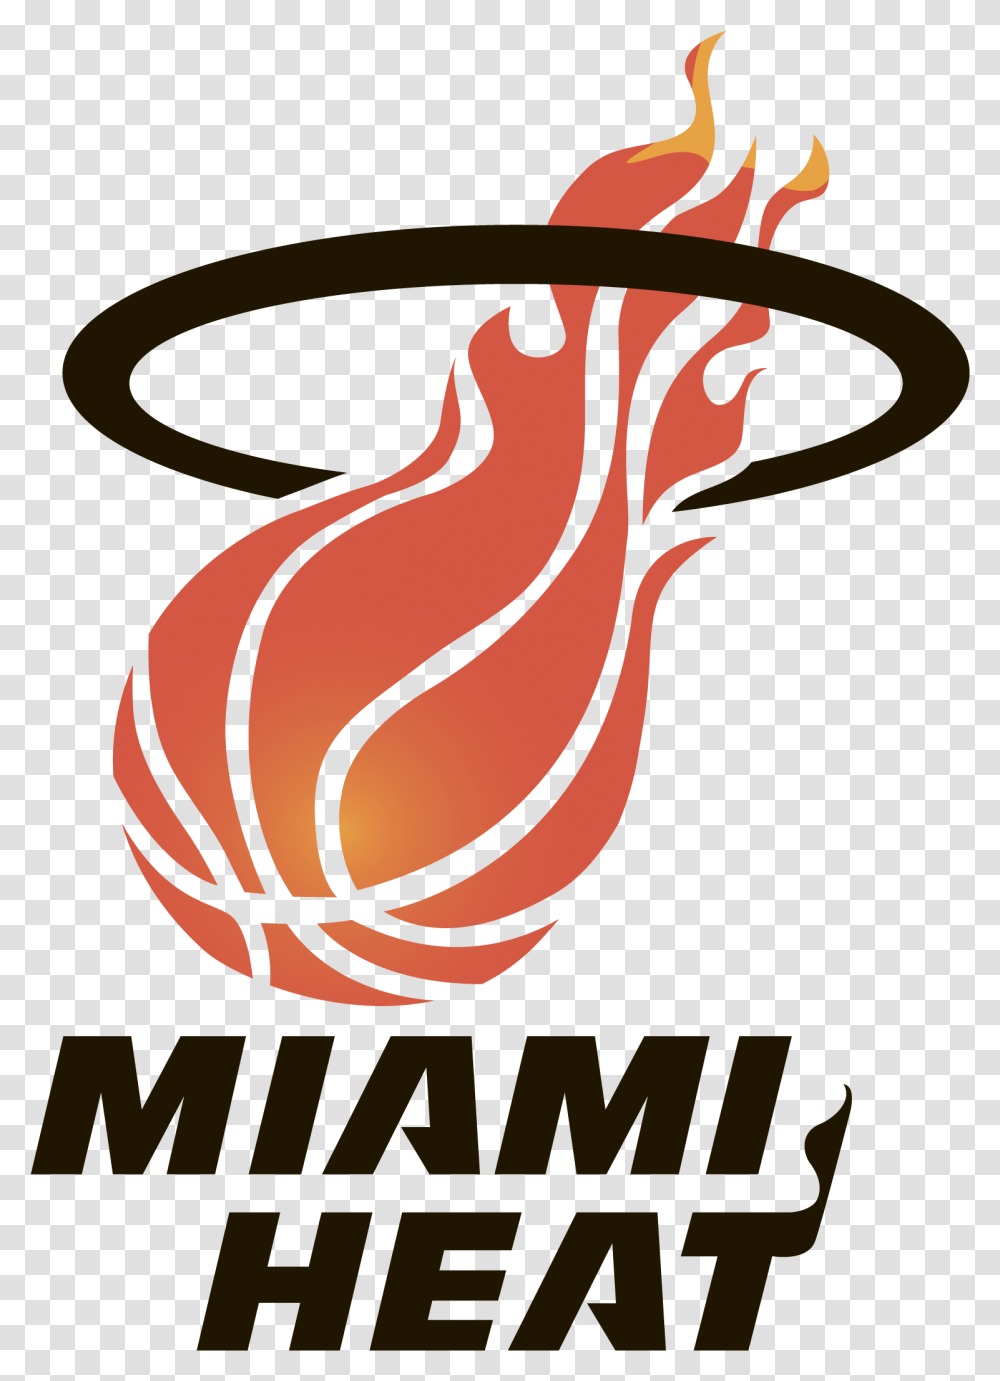 Miami Heat The Nba Finals Florida Panthers Miami Heat Logo, Animal, Bird, Flamingo, Clothing Transparent Png